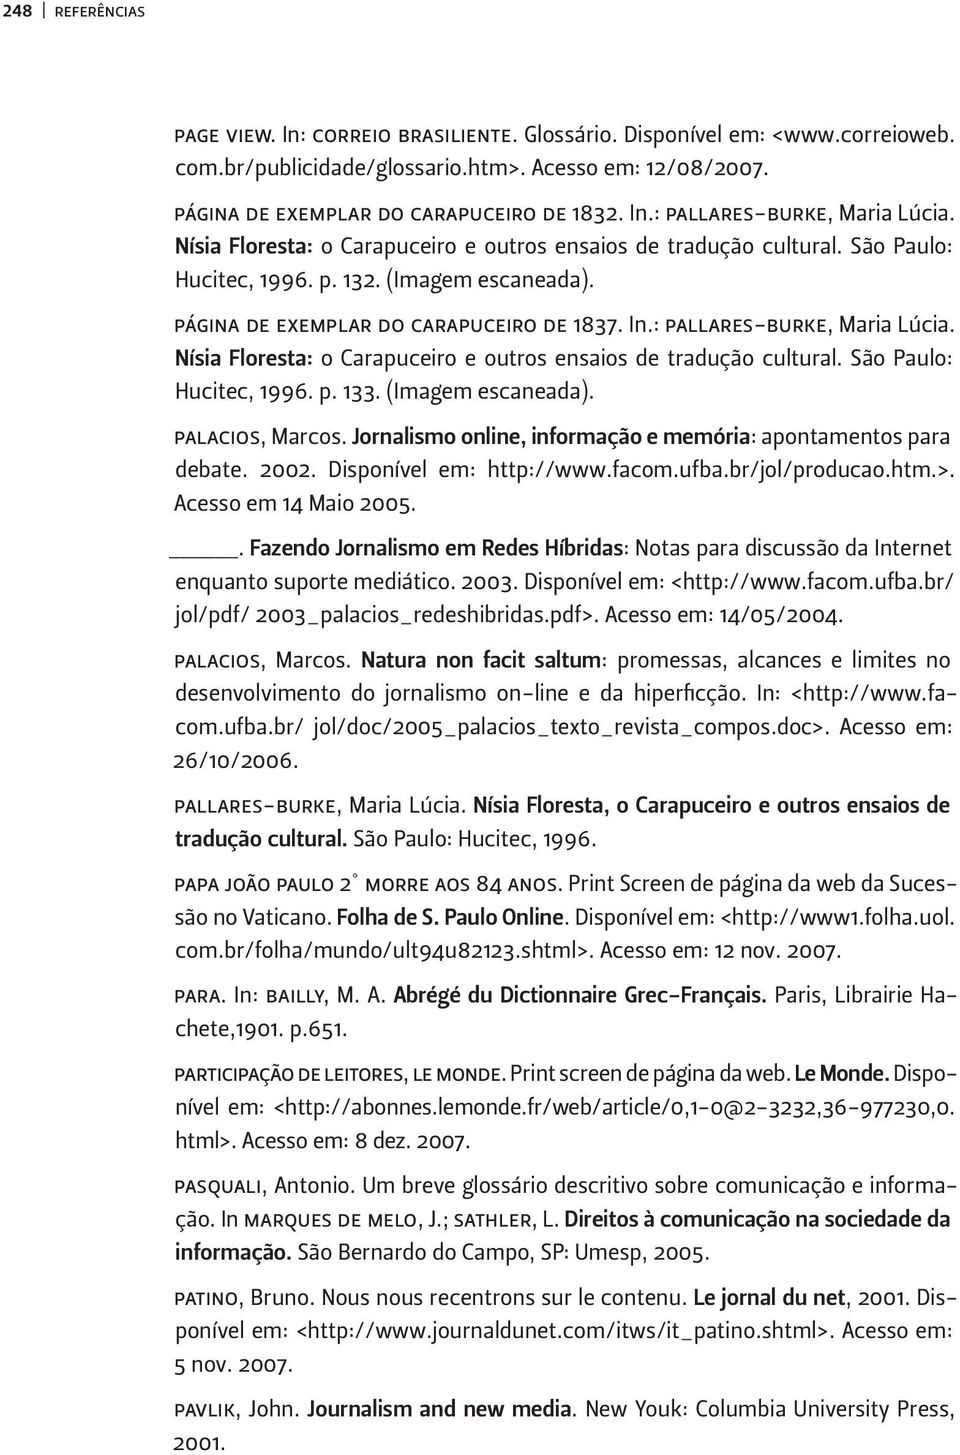 Nísia Floresta: o Carapuceiro e outros ensaios de tradução cultural. São Paulo: Hucitec, 1996. p. 133. (Imagem escaneada). palacios, Marcos.